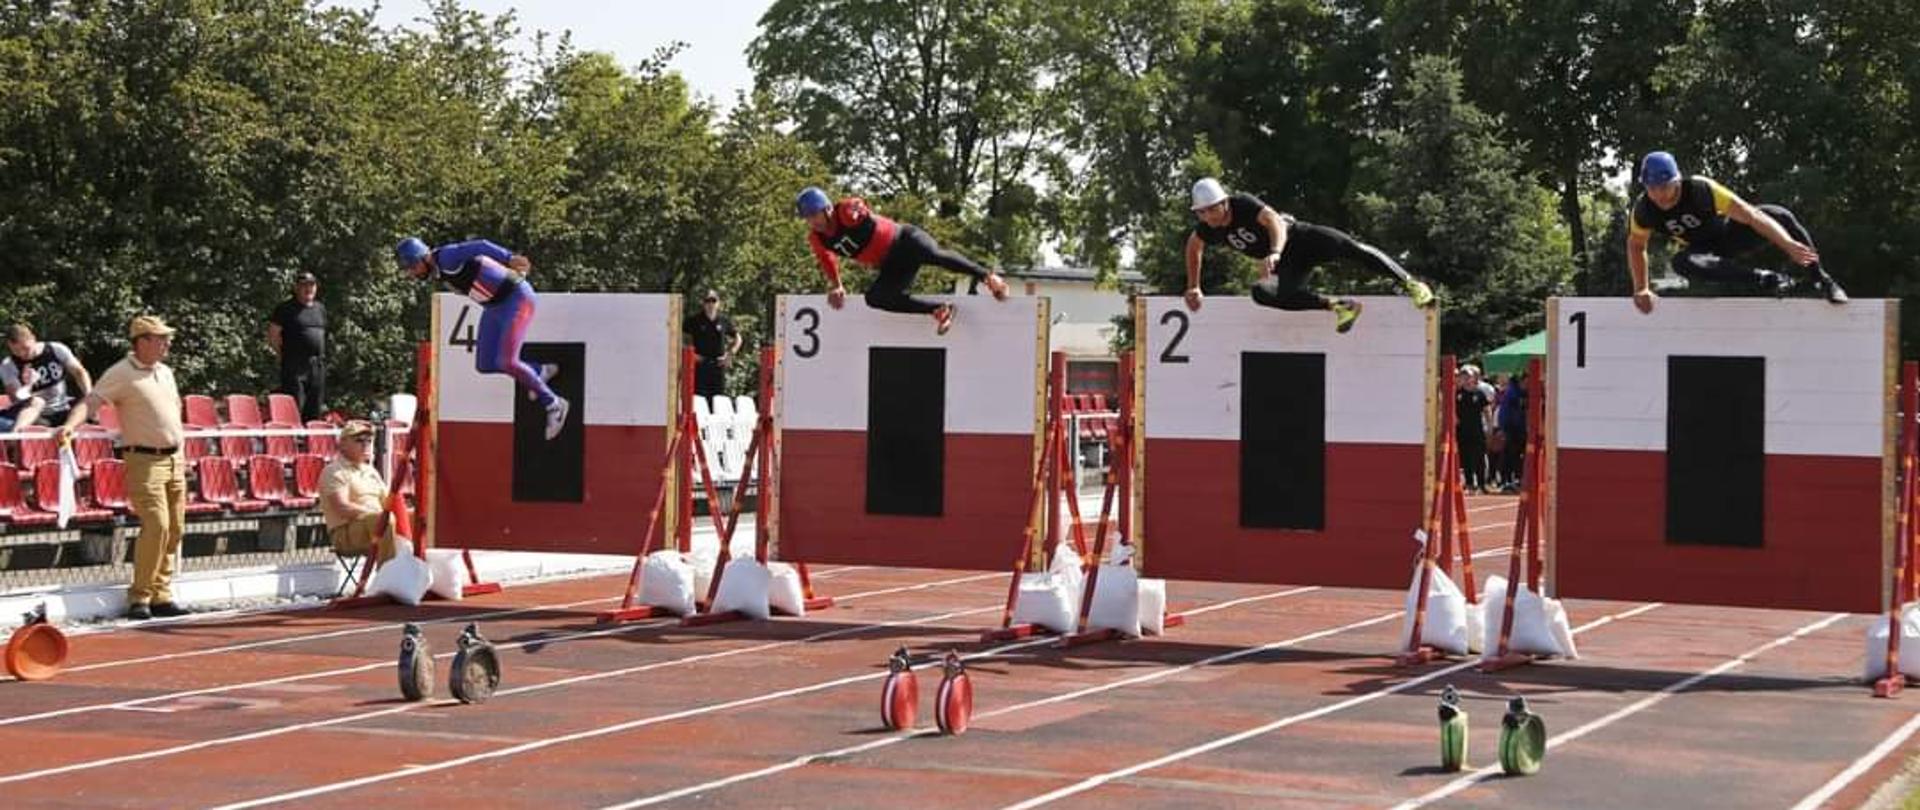 Zdjęcie przedstawia czterech zawodników pokonujących dwumetrową ścianę w konkurencji pożarniczy tor przeszkód 100 metrów.